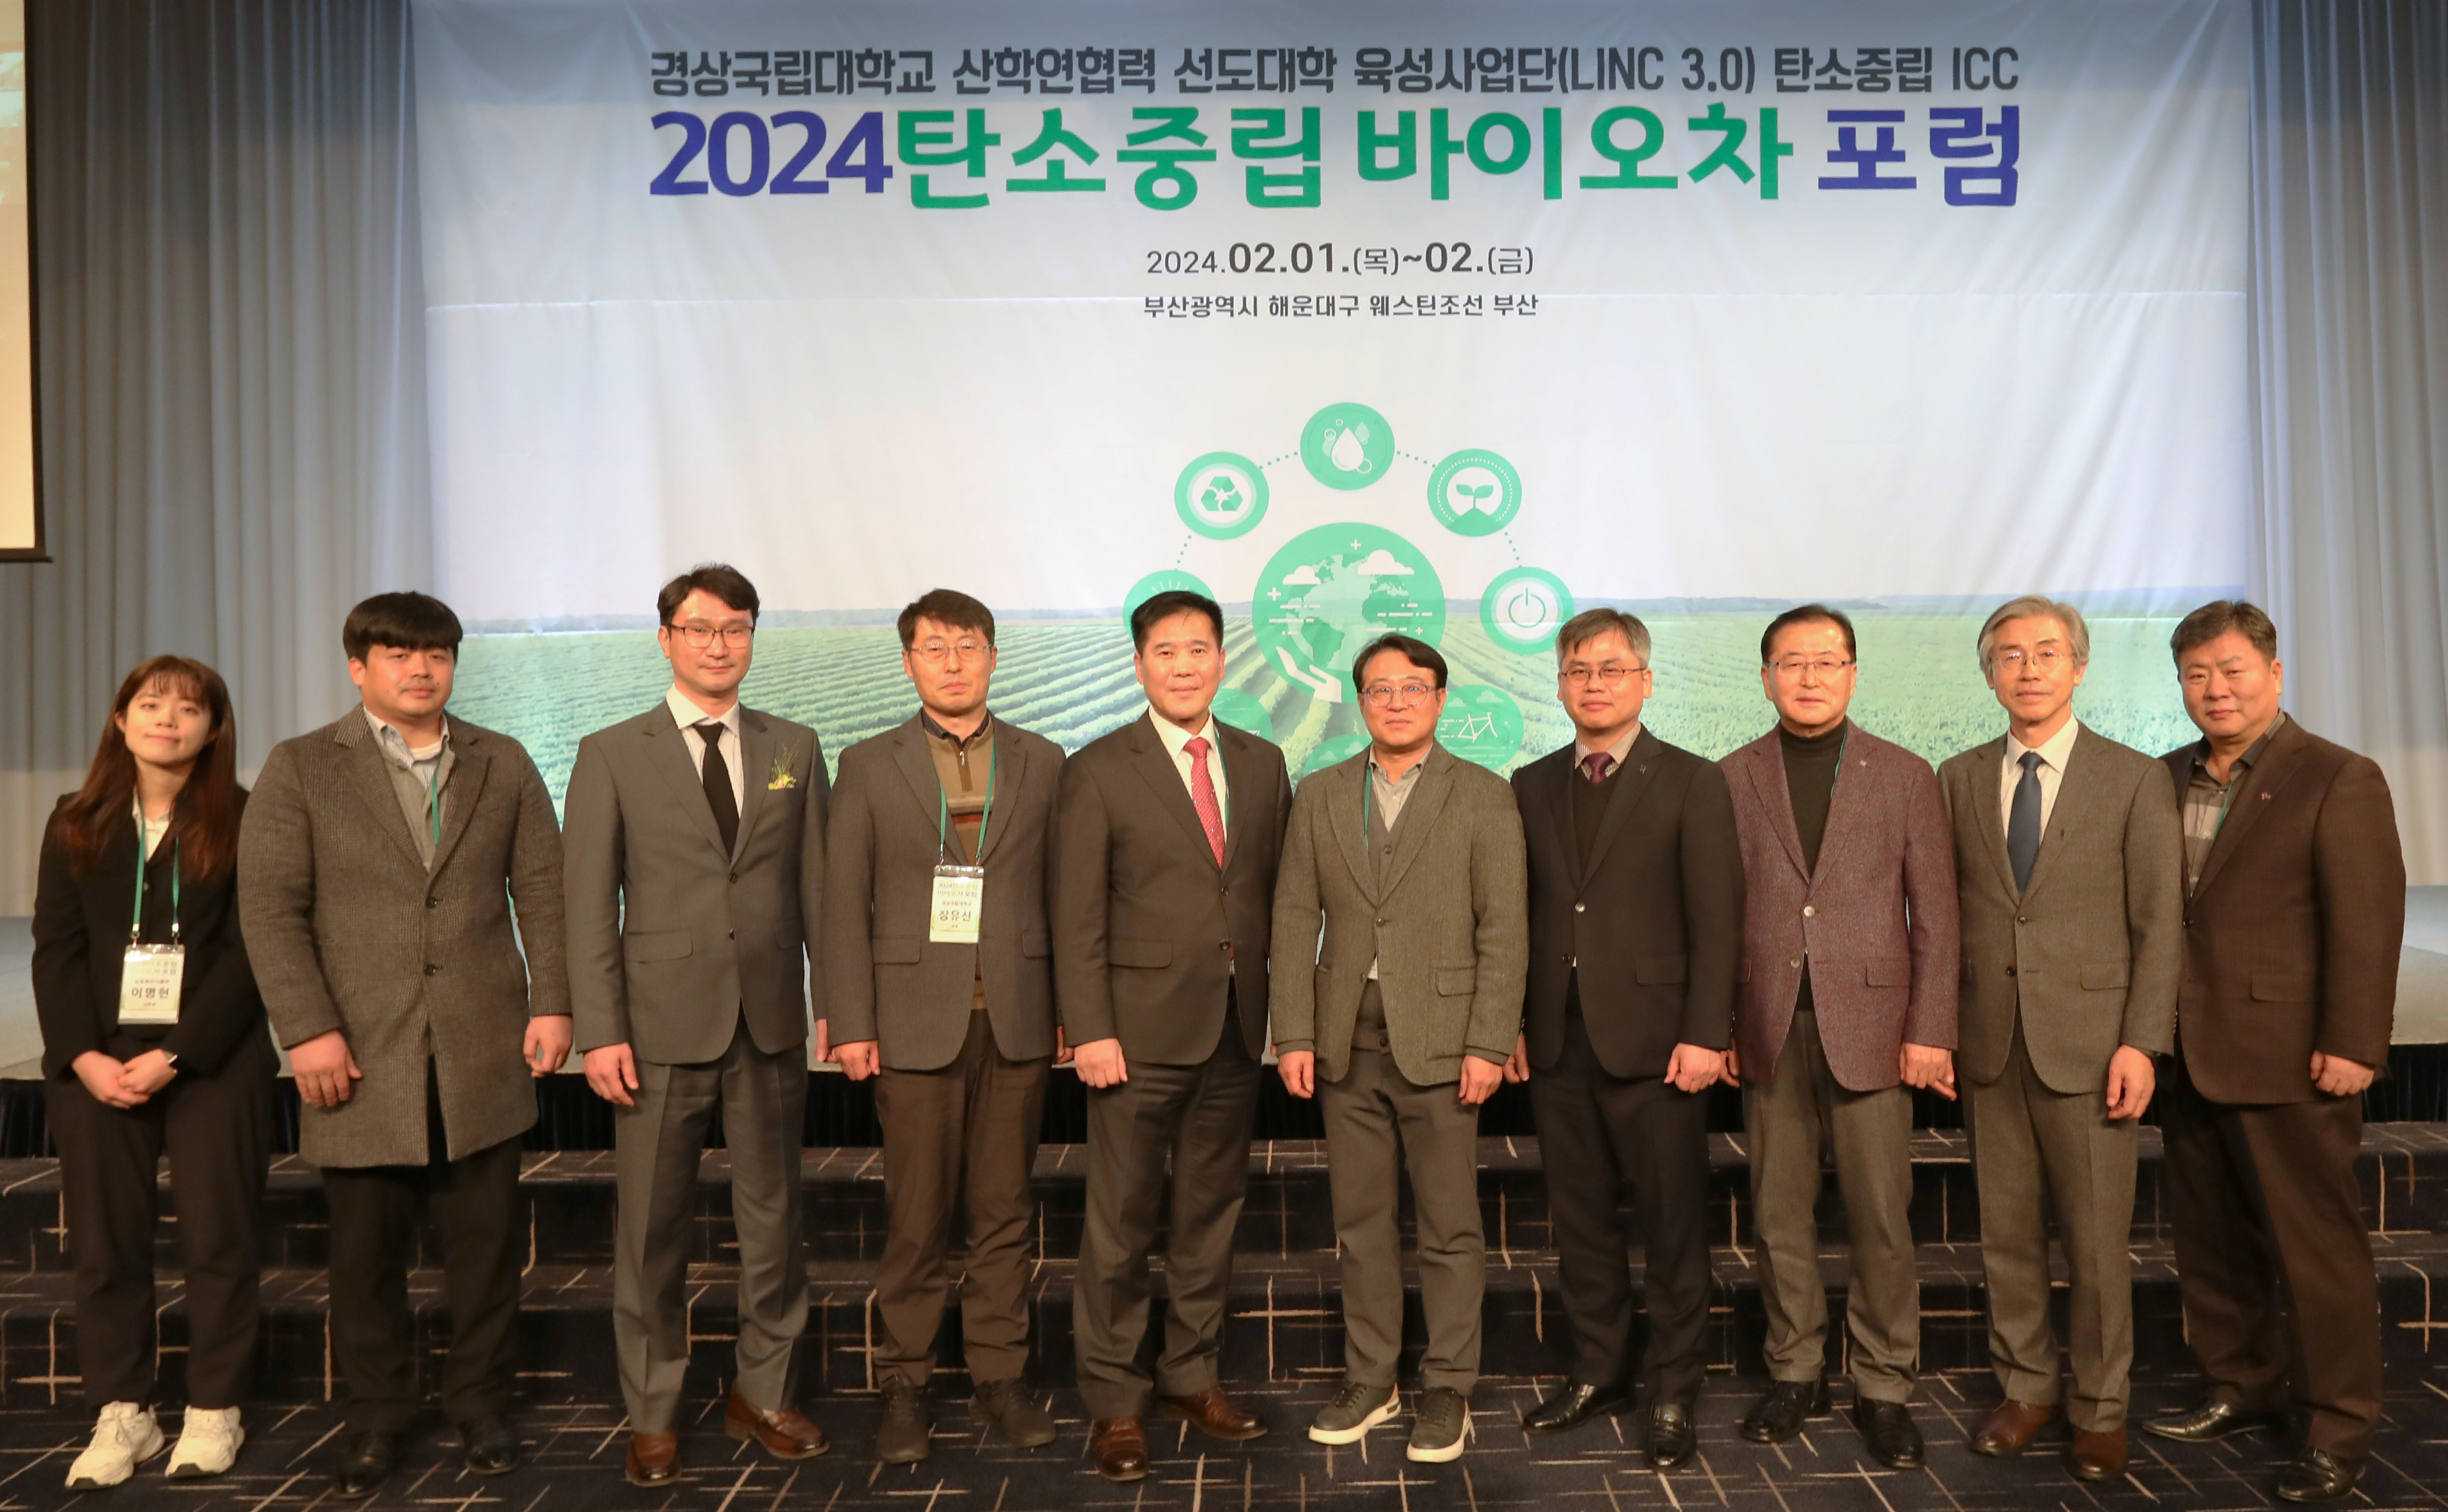 경상국립대학교(GNU) 산학연협력 선도대학 육성사업단은 2월 1-2일 웨스틴 조선 부산에서 ‘2024 탄소중립 바이오차 포럼’을 개최했다.